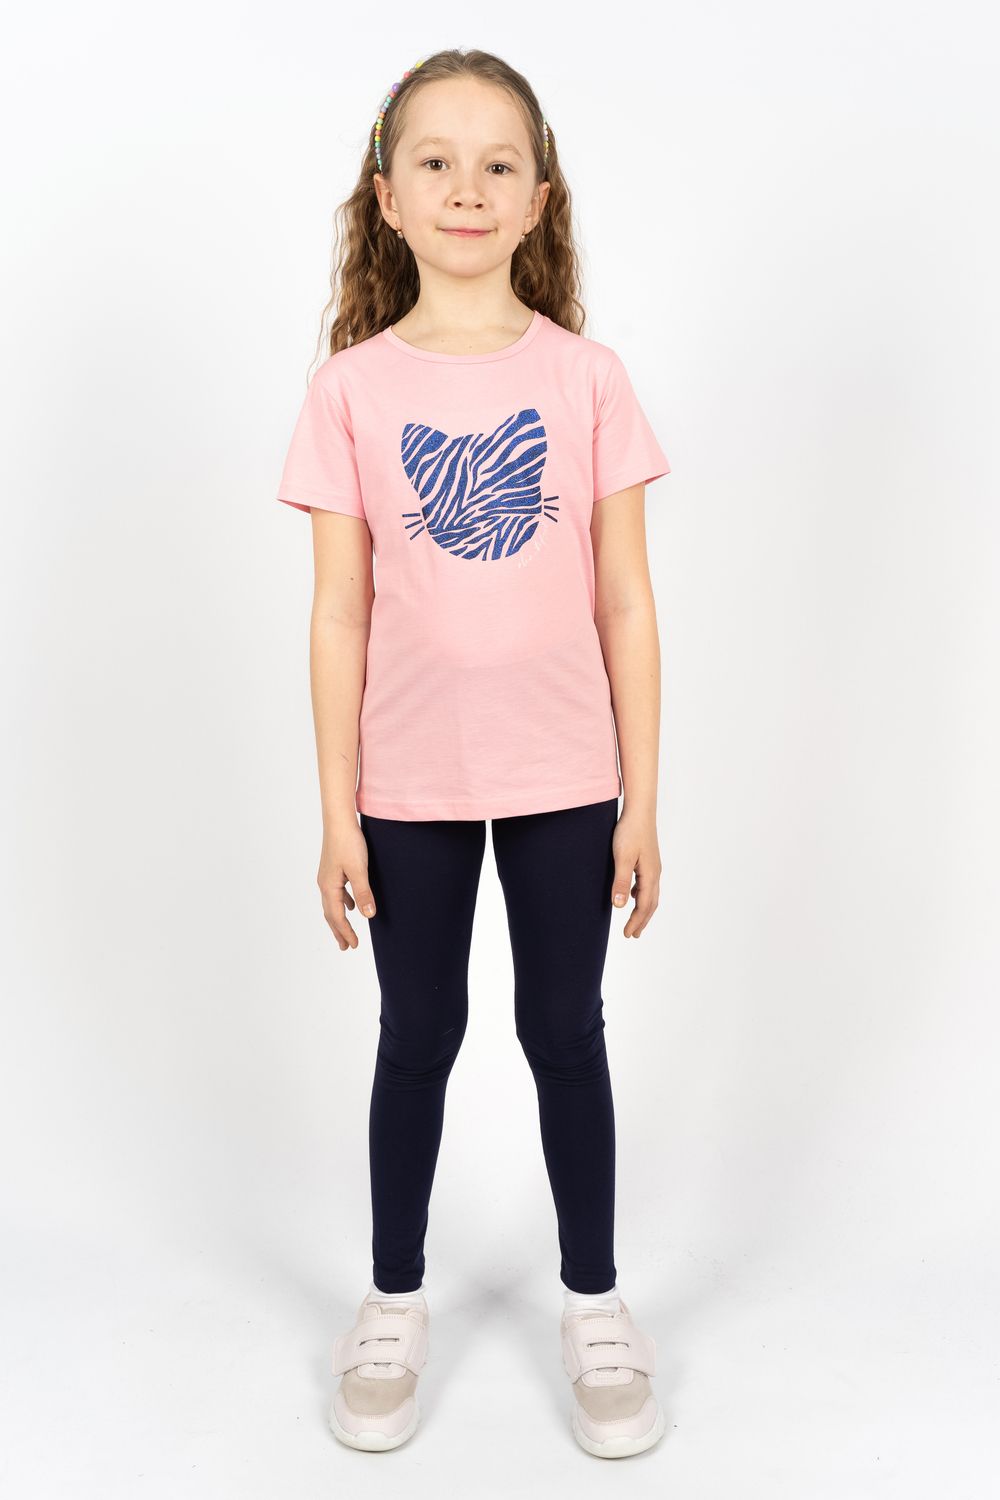 Комплект для девочки 41110 (футболка +лосины) - с.розовый/т.синий